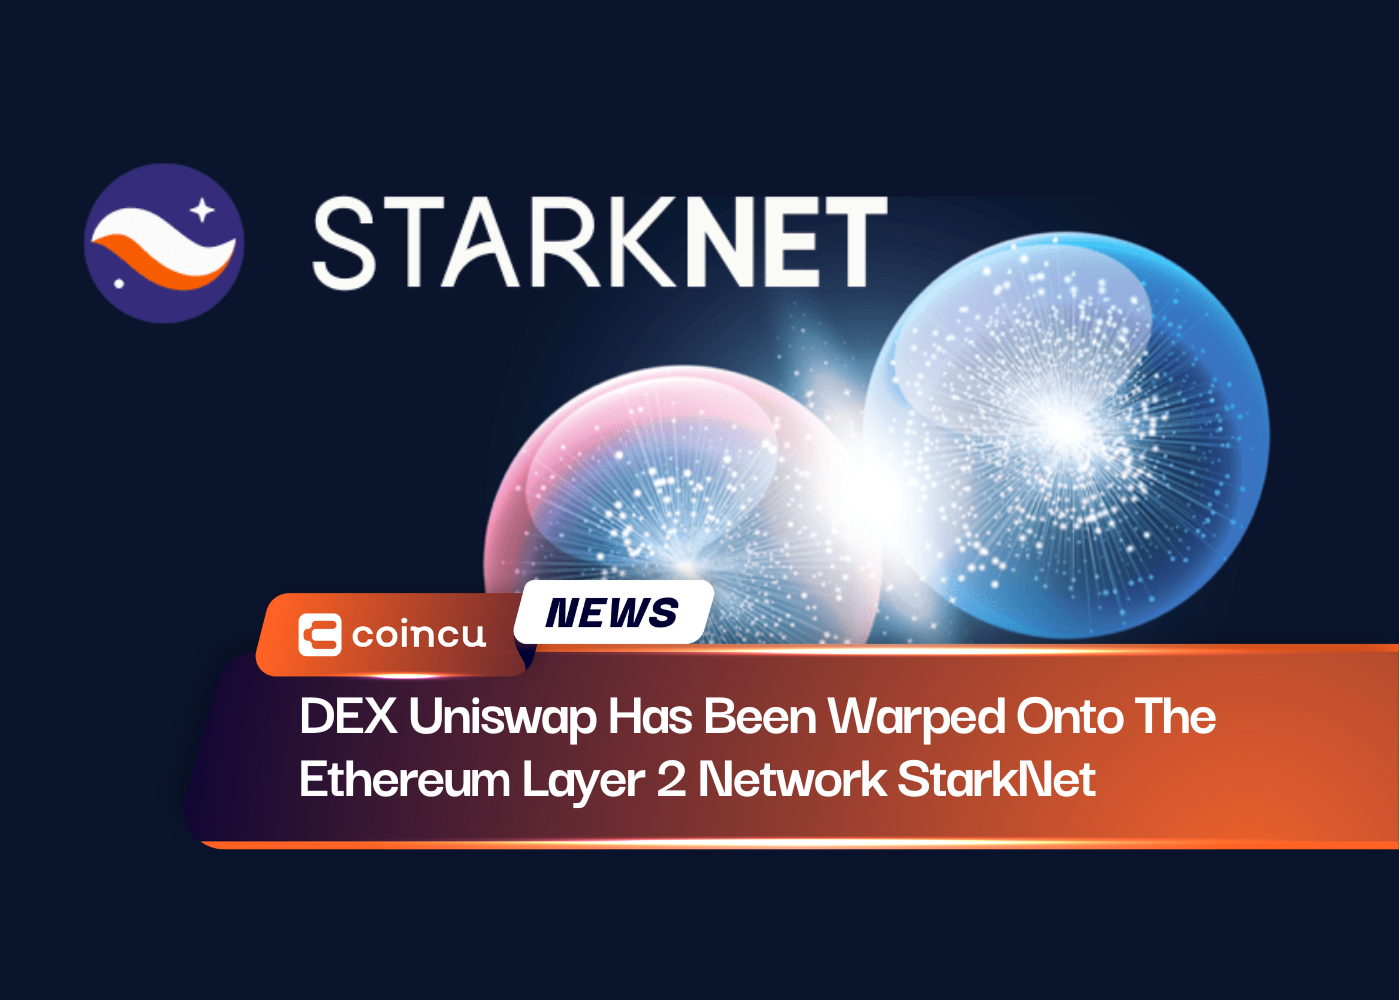 DEX Uniswap Has Been Warped Onto The Ethereum Layer 2 Network StarkNet